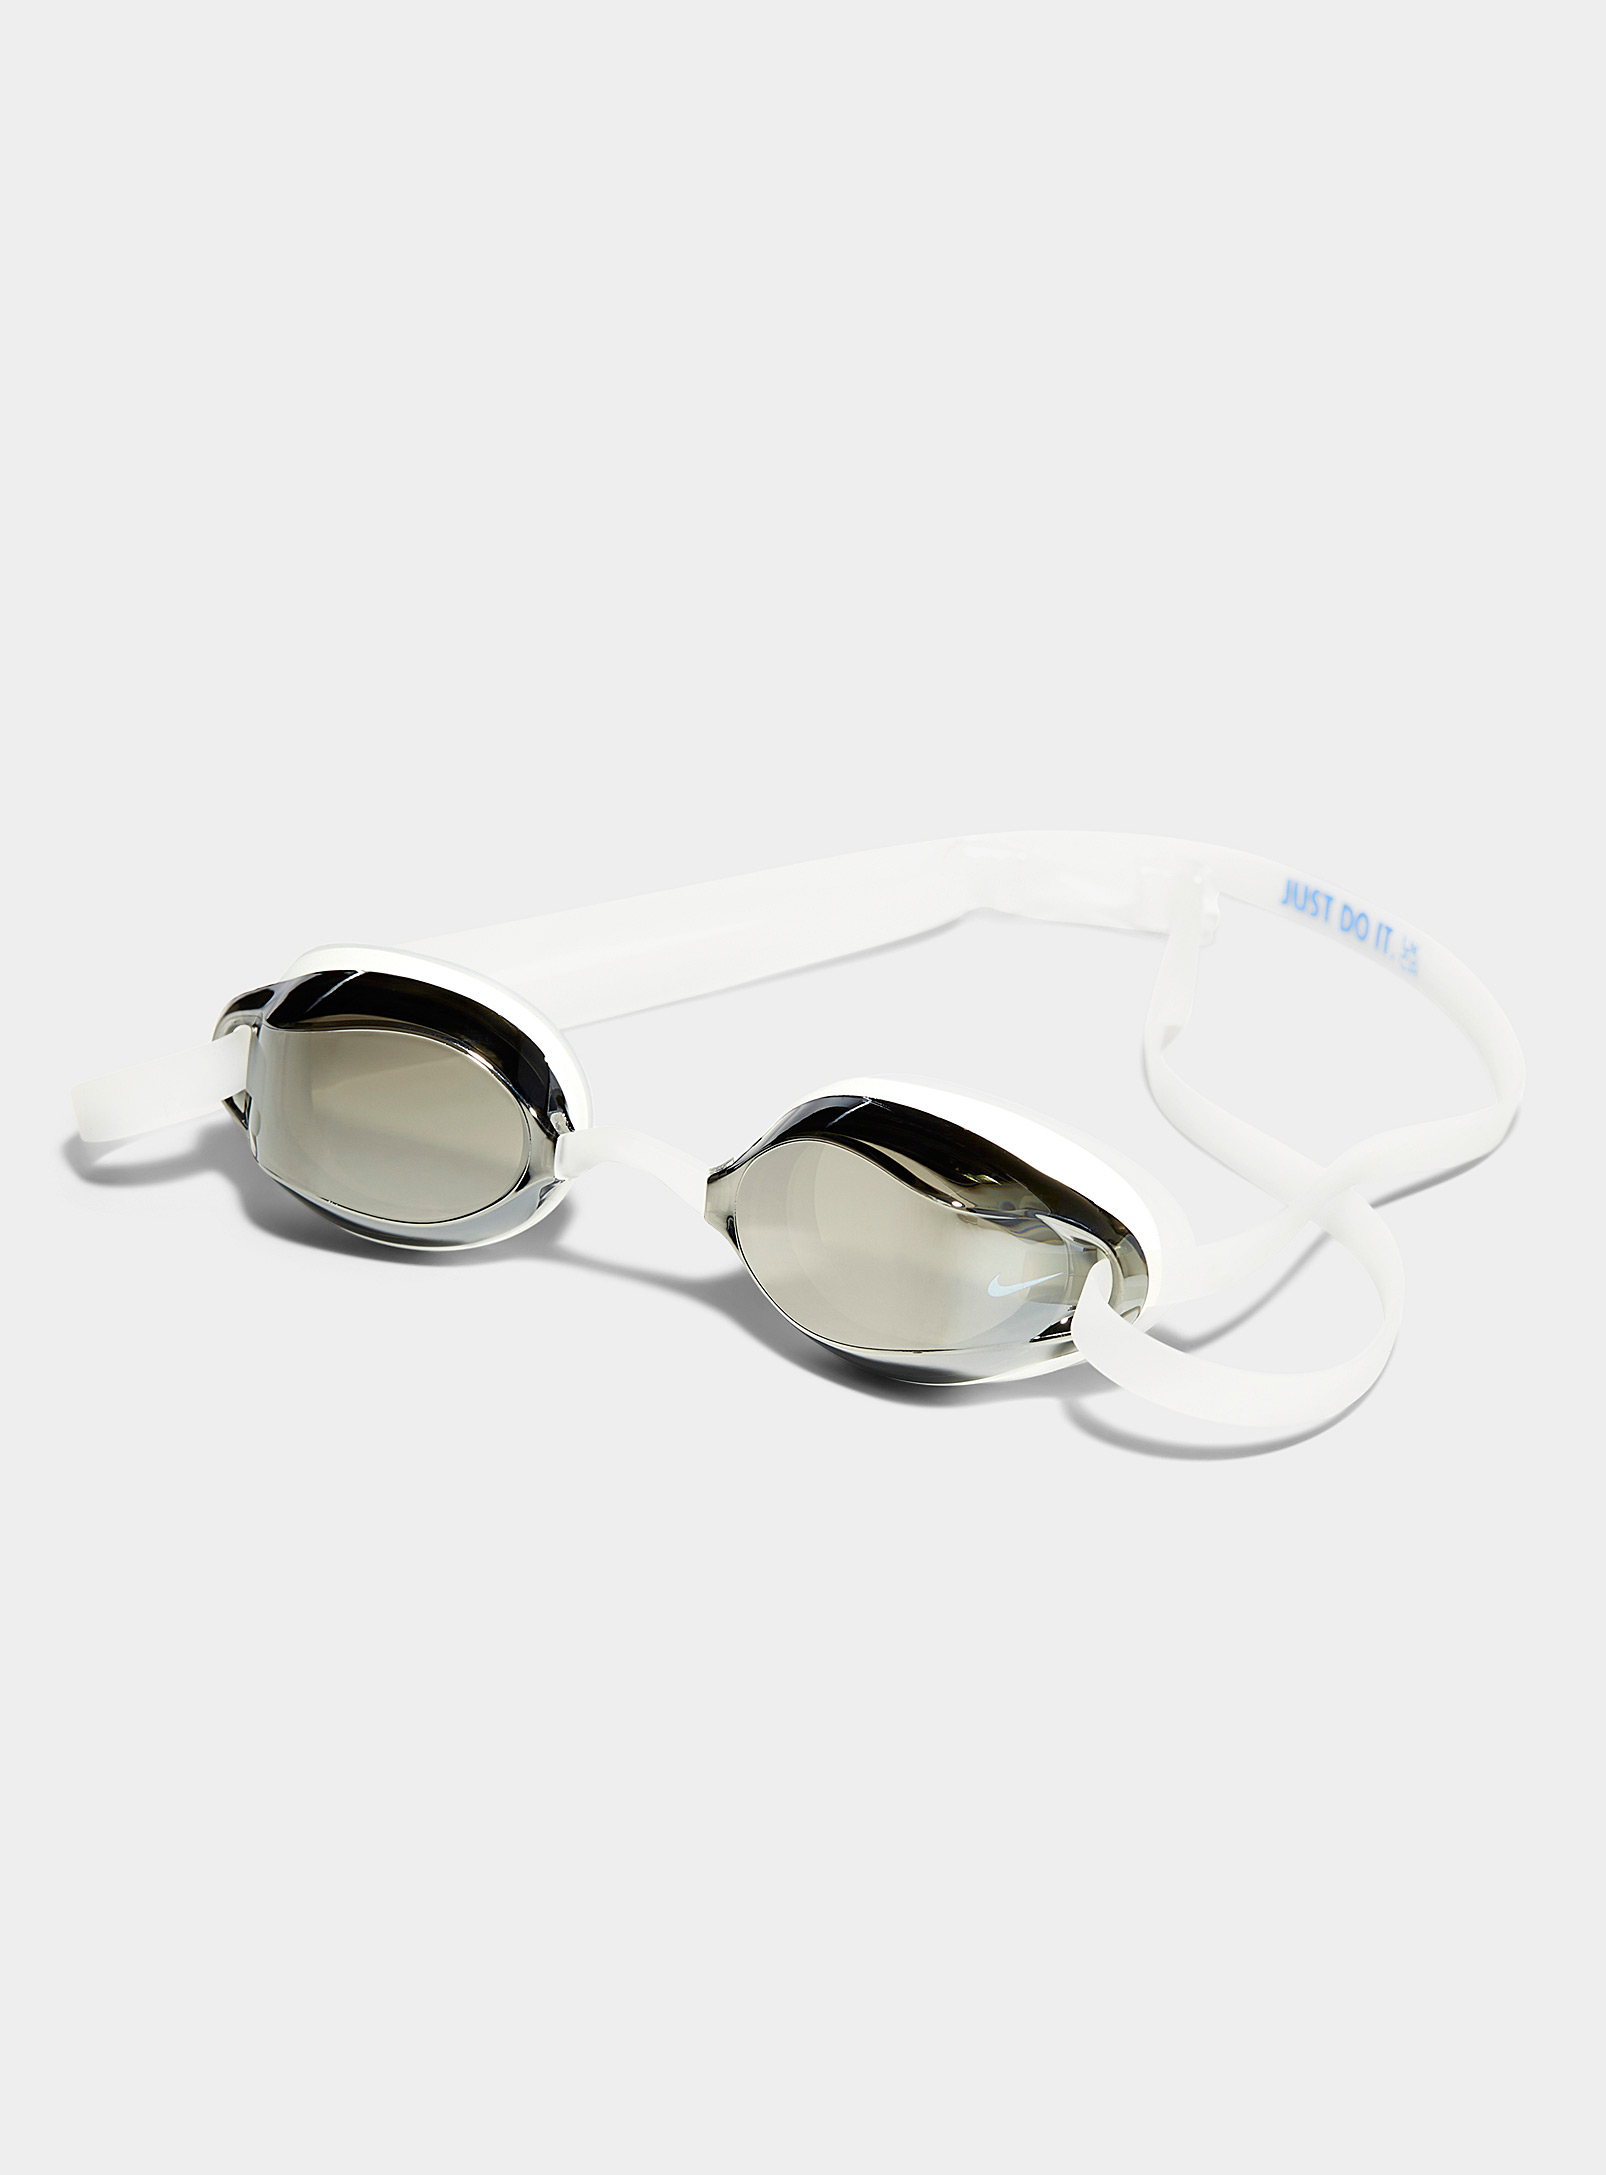 Nike Legacy Mirrored Swim Goggles Latex Free In White